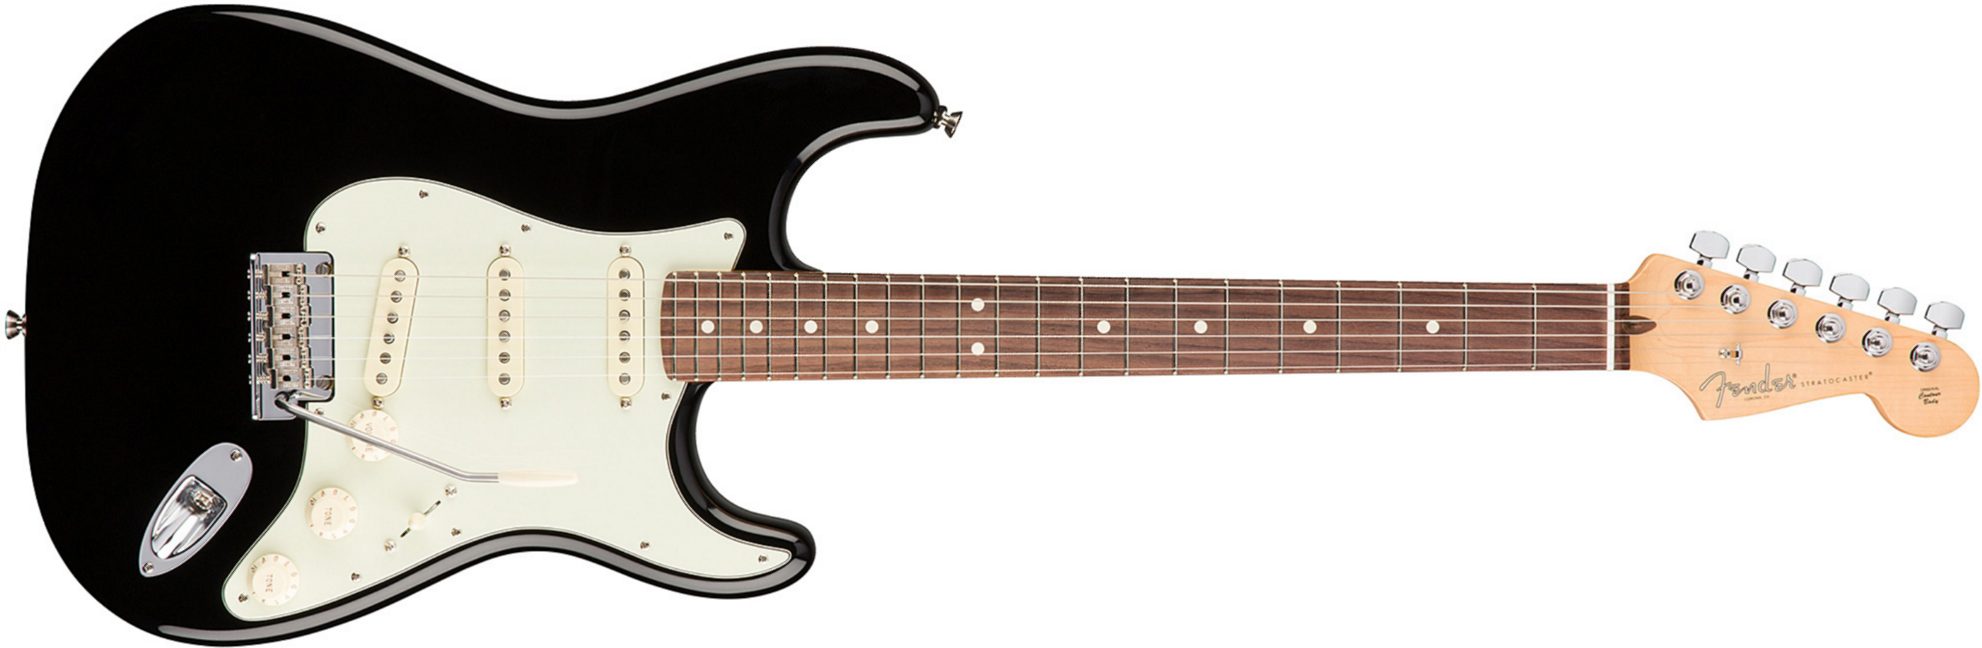 Fender Strat American Professional 2017 3s Usa Rw - Black - Elektrische gitaar in Str-vorm - Main picture